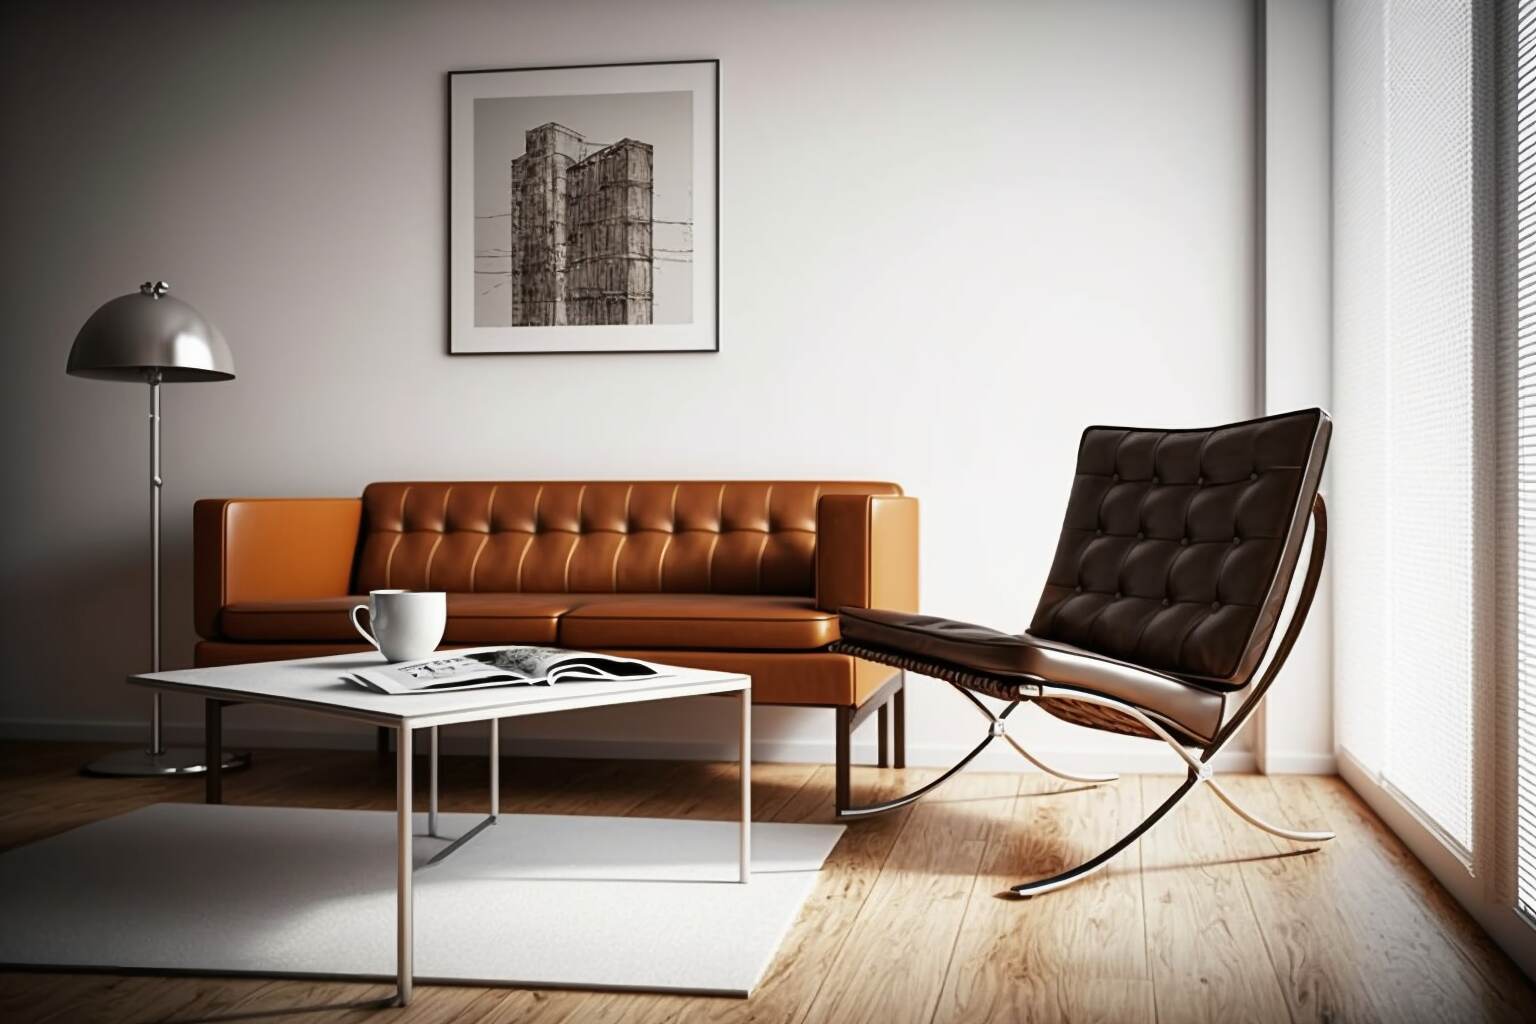 Studio-Apartment Mit Einem Barcelona Chair.